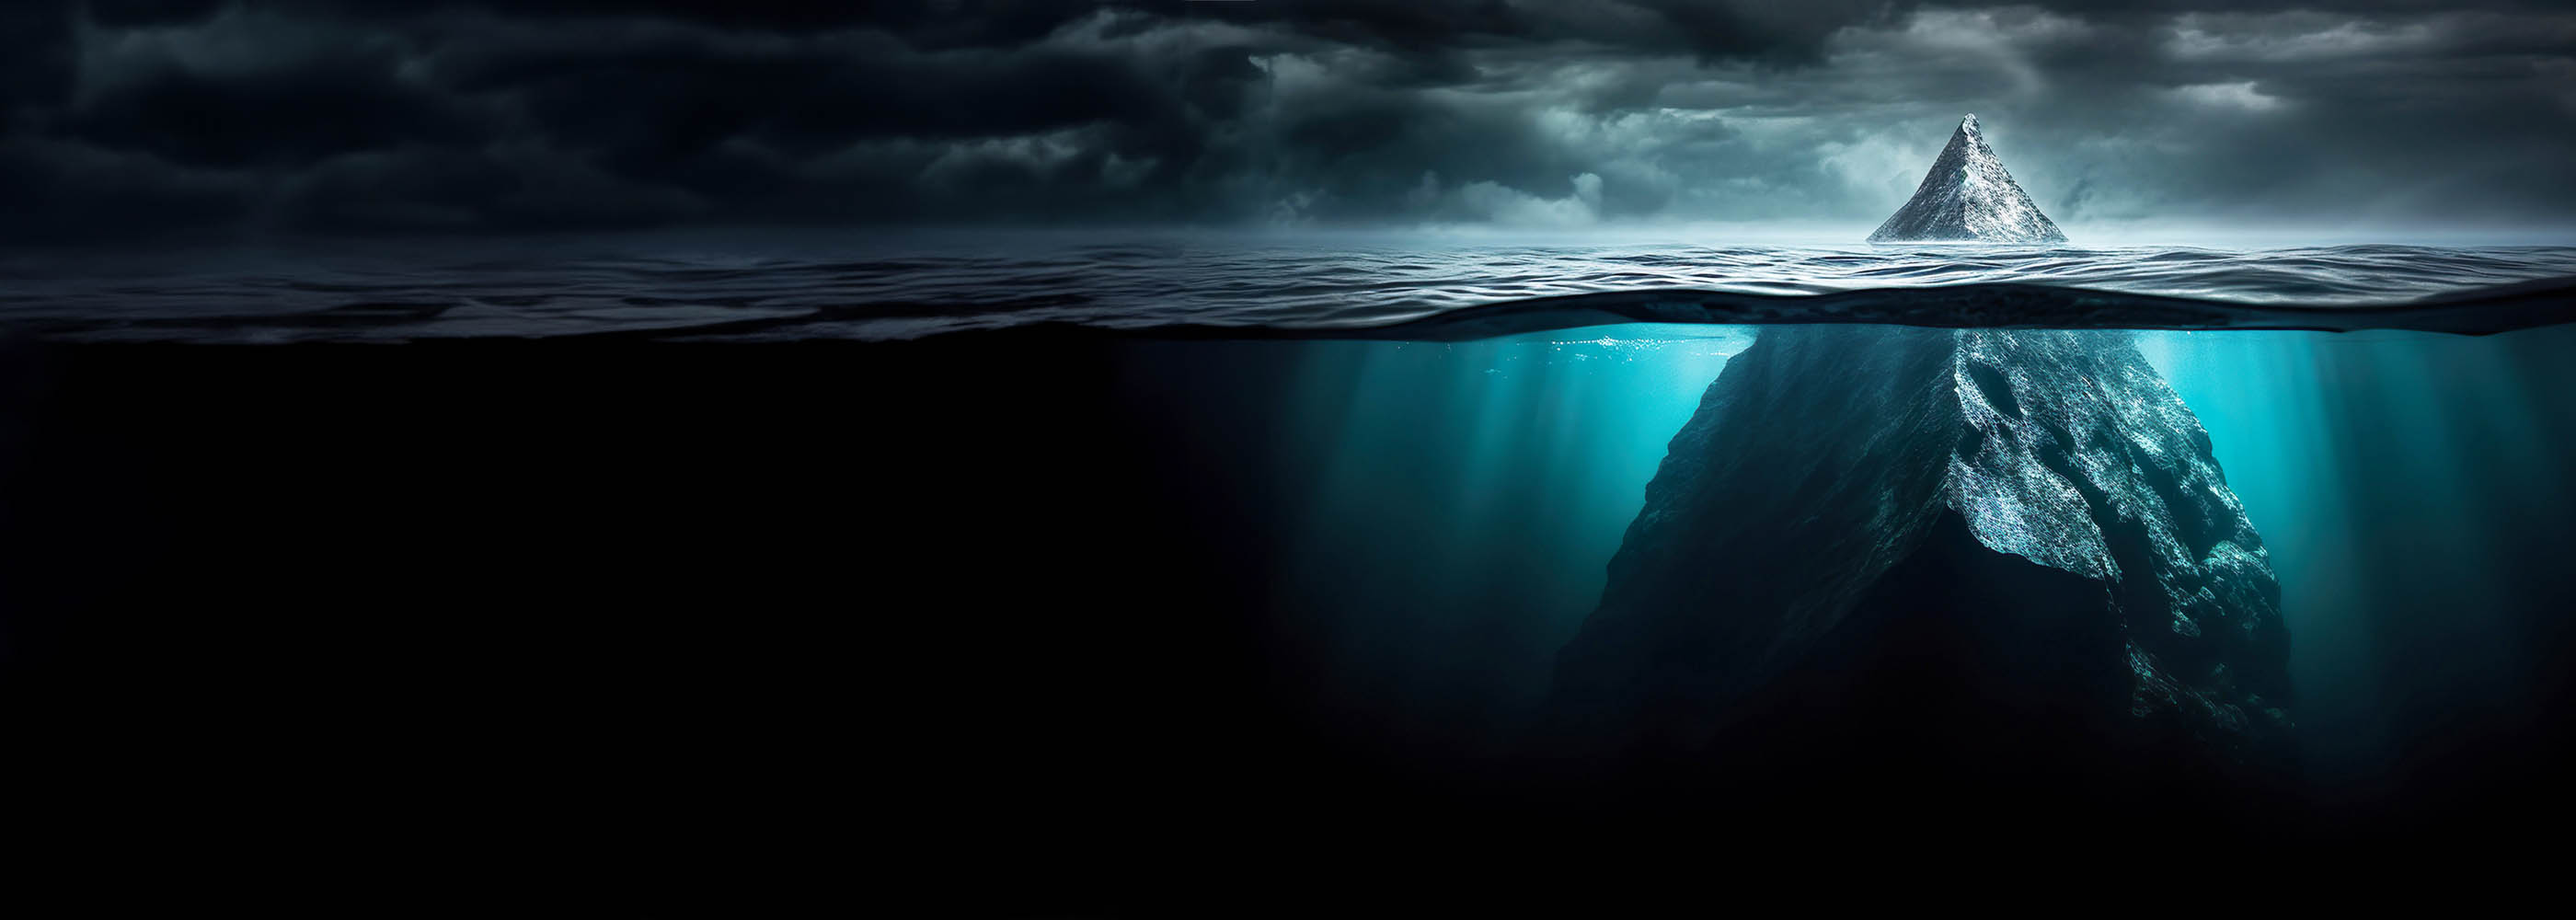 Die Spitze eines Eisbergs ragt aus dem Wasser.